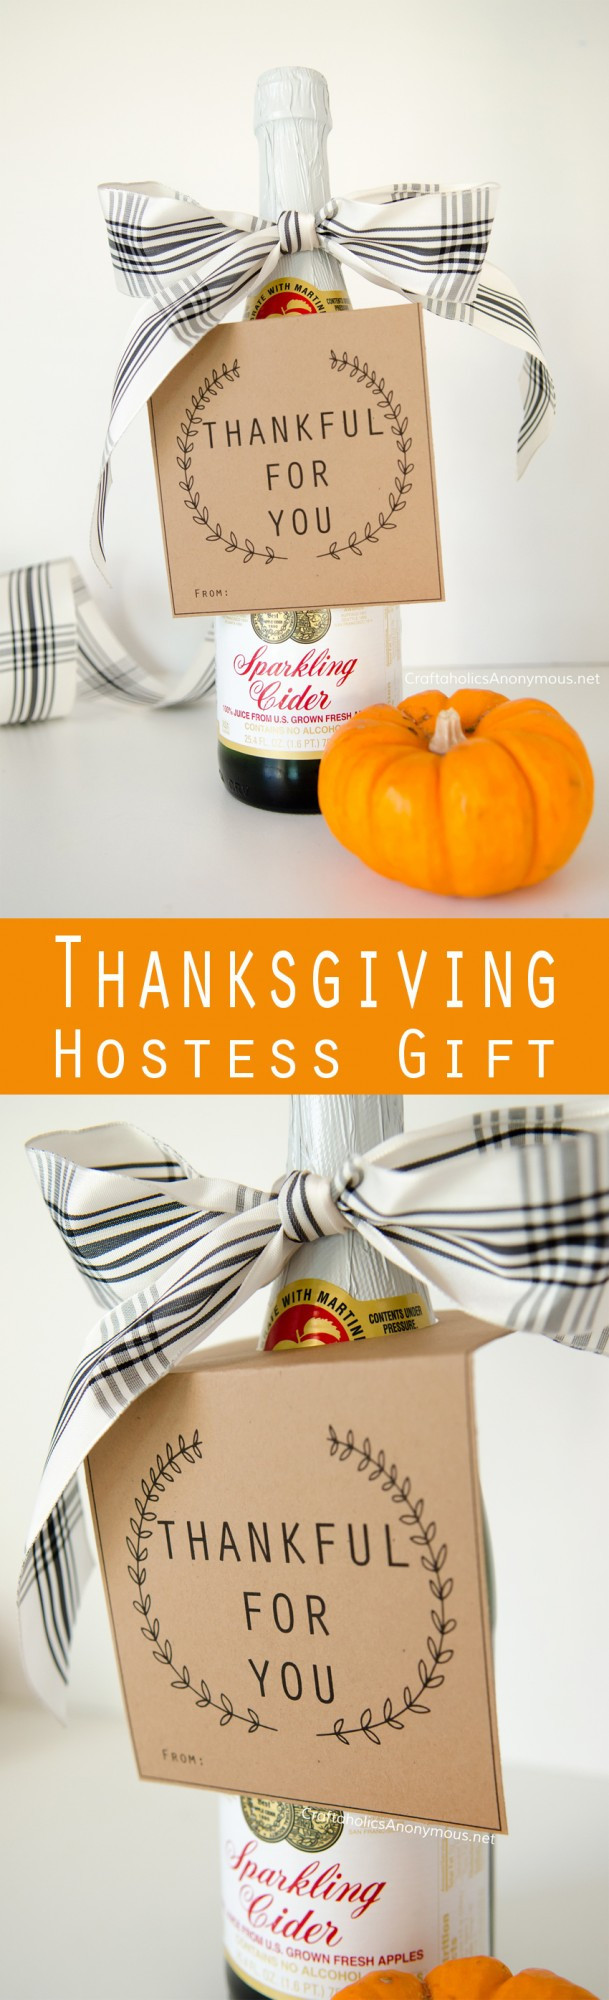 Thanksgiving Hostess Gift Ideas Homemade
 21 Ideas for Thanksgiving Hostess Gift Ideas Homemade